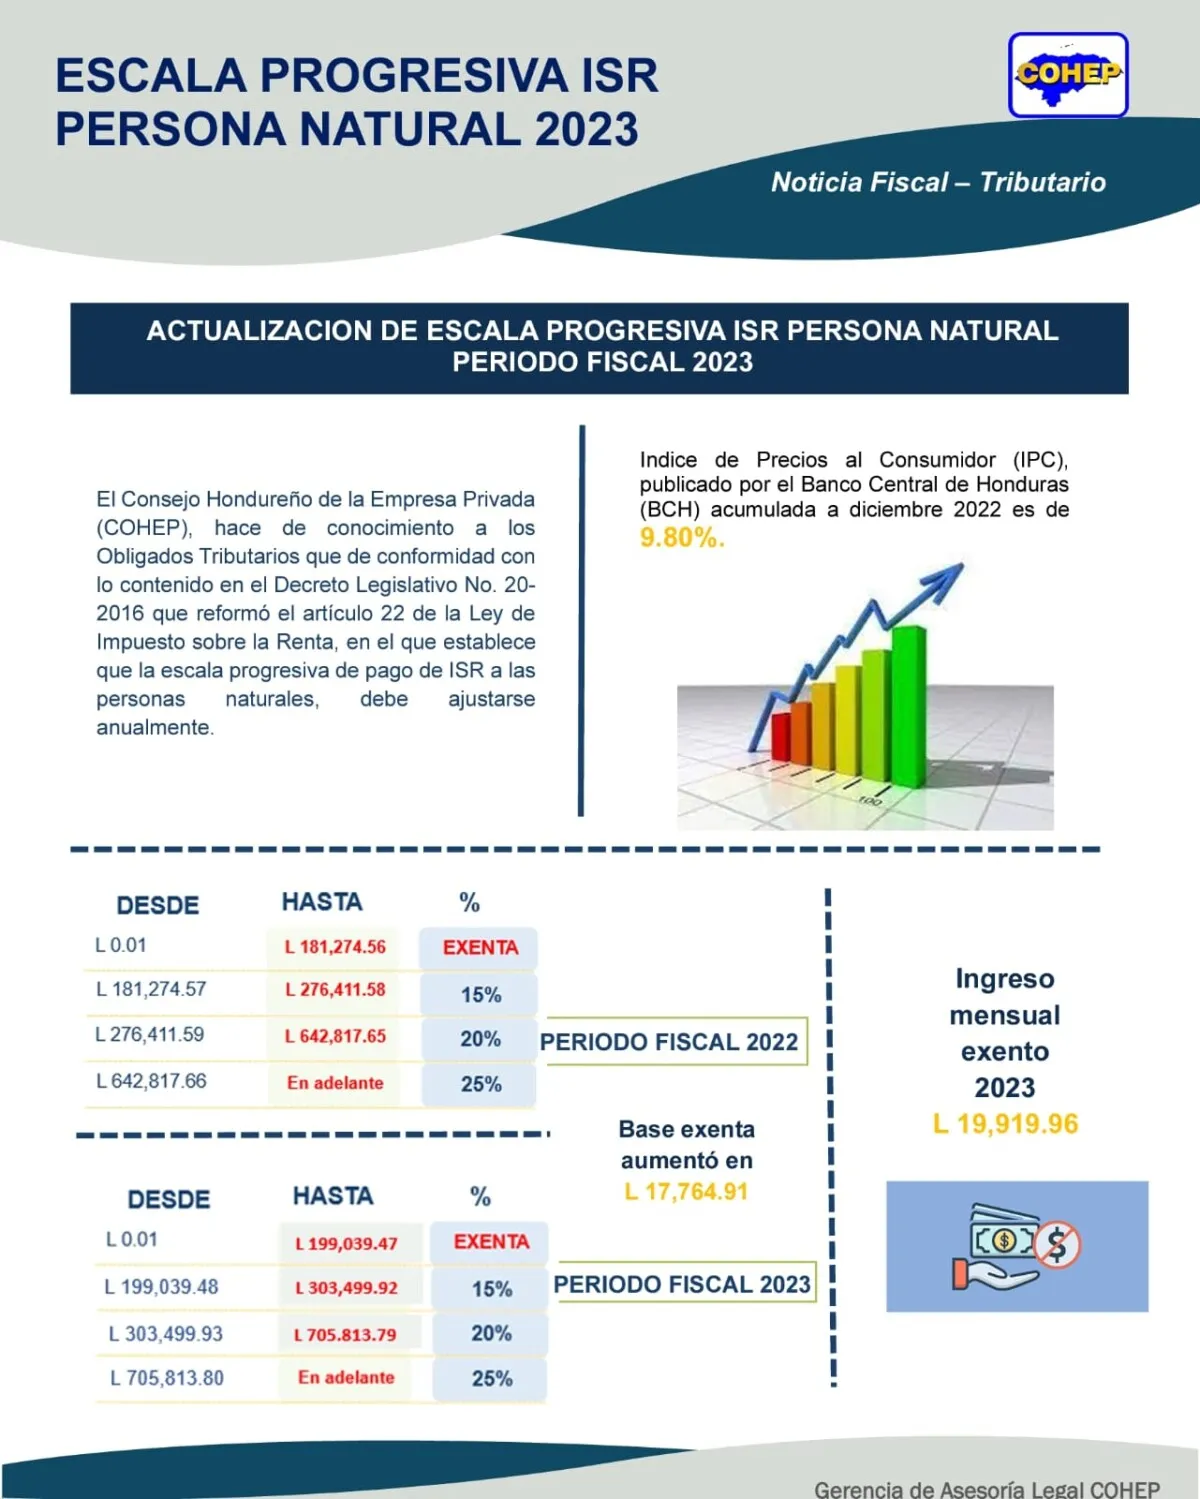 COHEP: Escala de Tarifas Progresivas del ISR para el Período 2023 considerando el nivel de inflación según datos del BCH